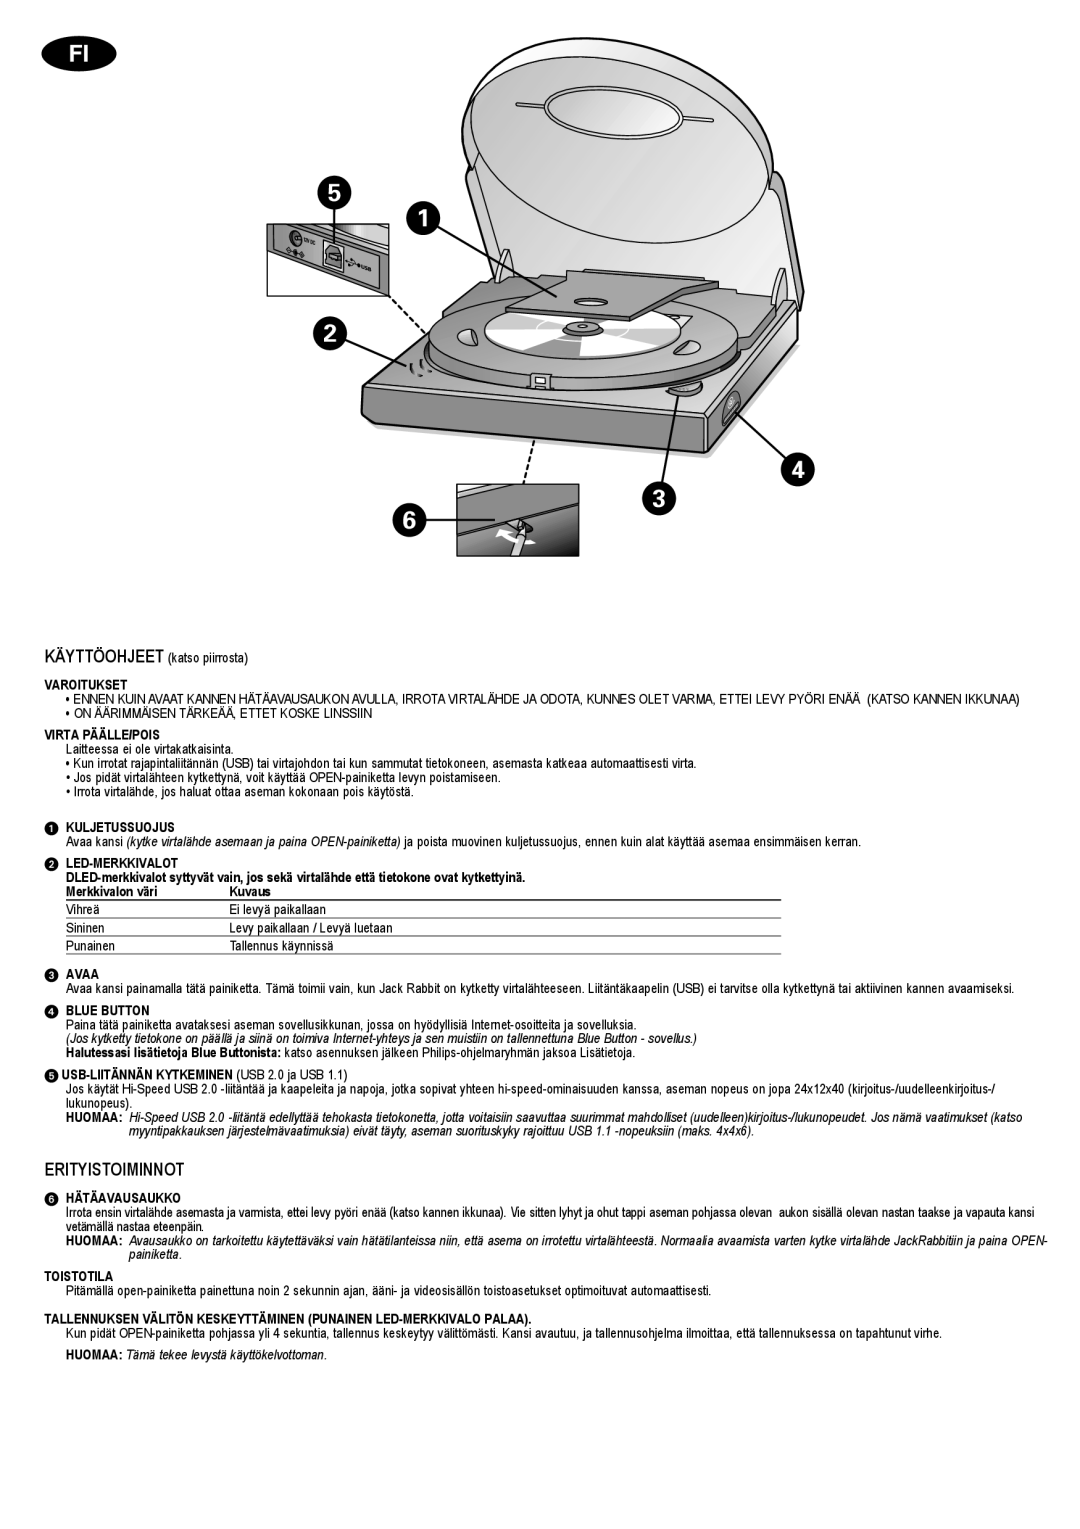 Philips JR24CDRW manual Erityistoiminnot 